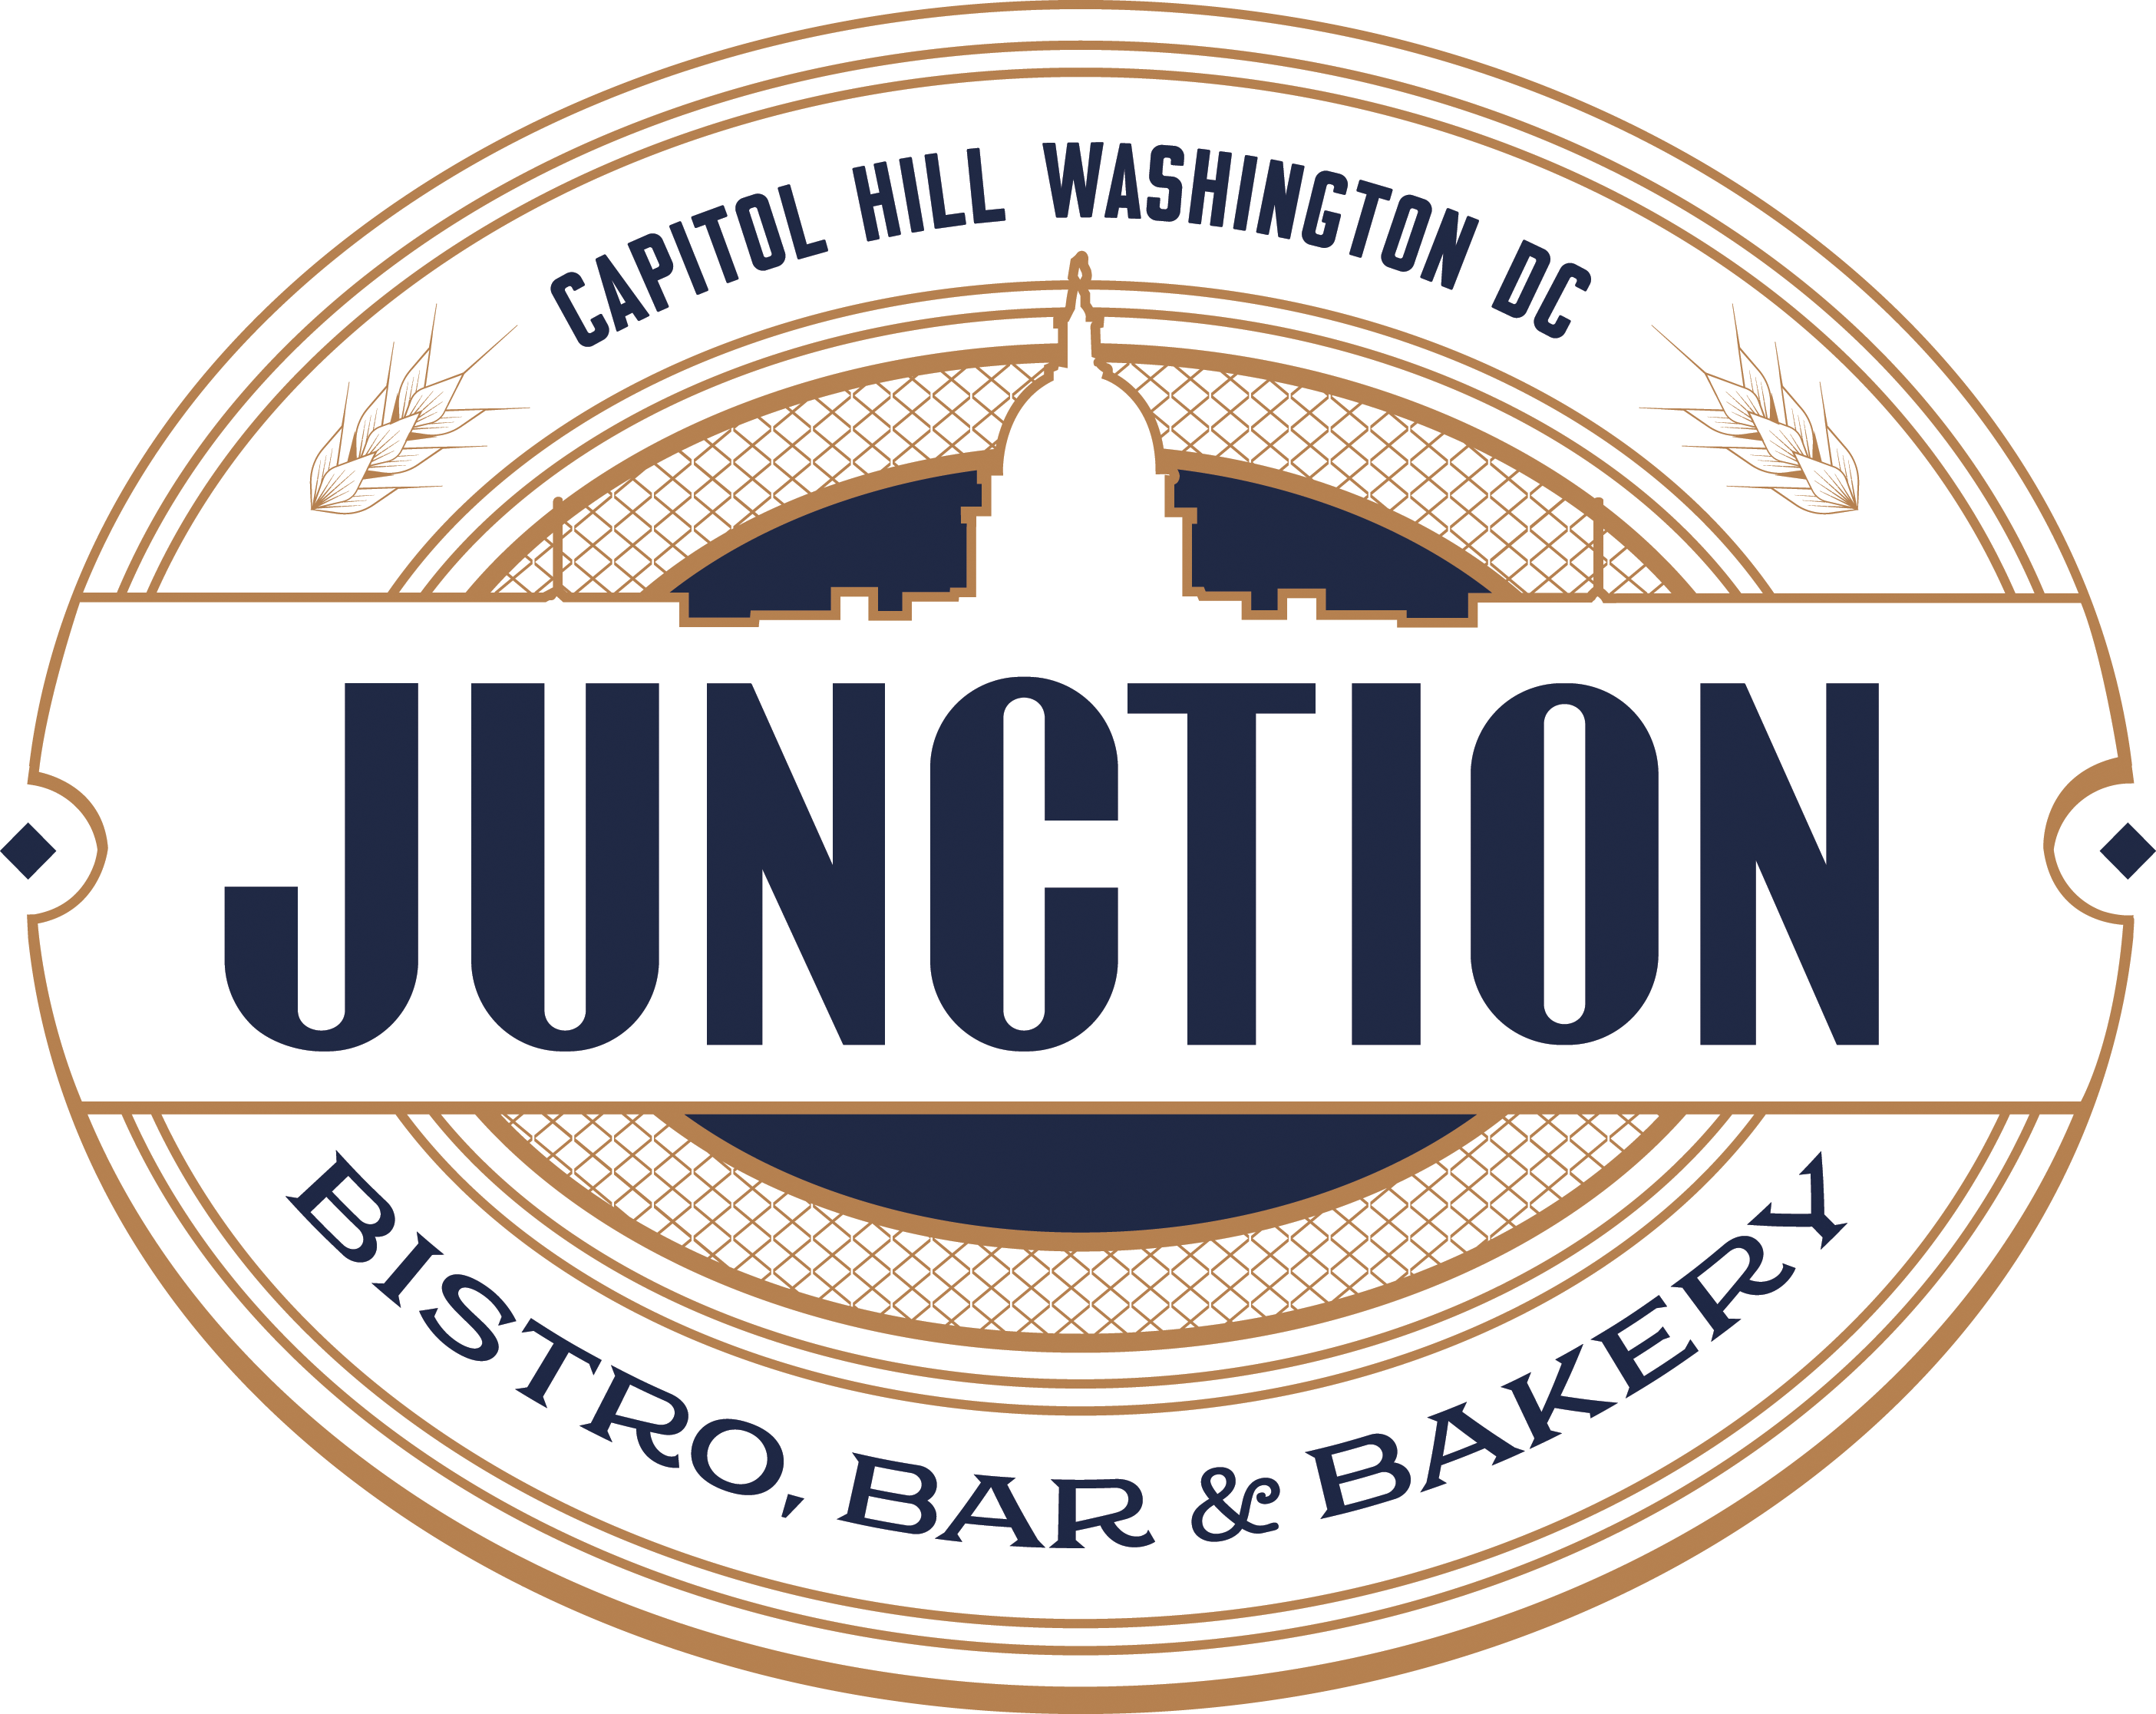 Junction Bistro, Bar & Bakery Capitol Hill 238 Massachusetts Ave NE